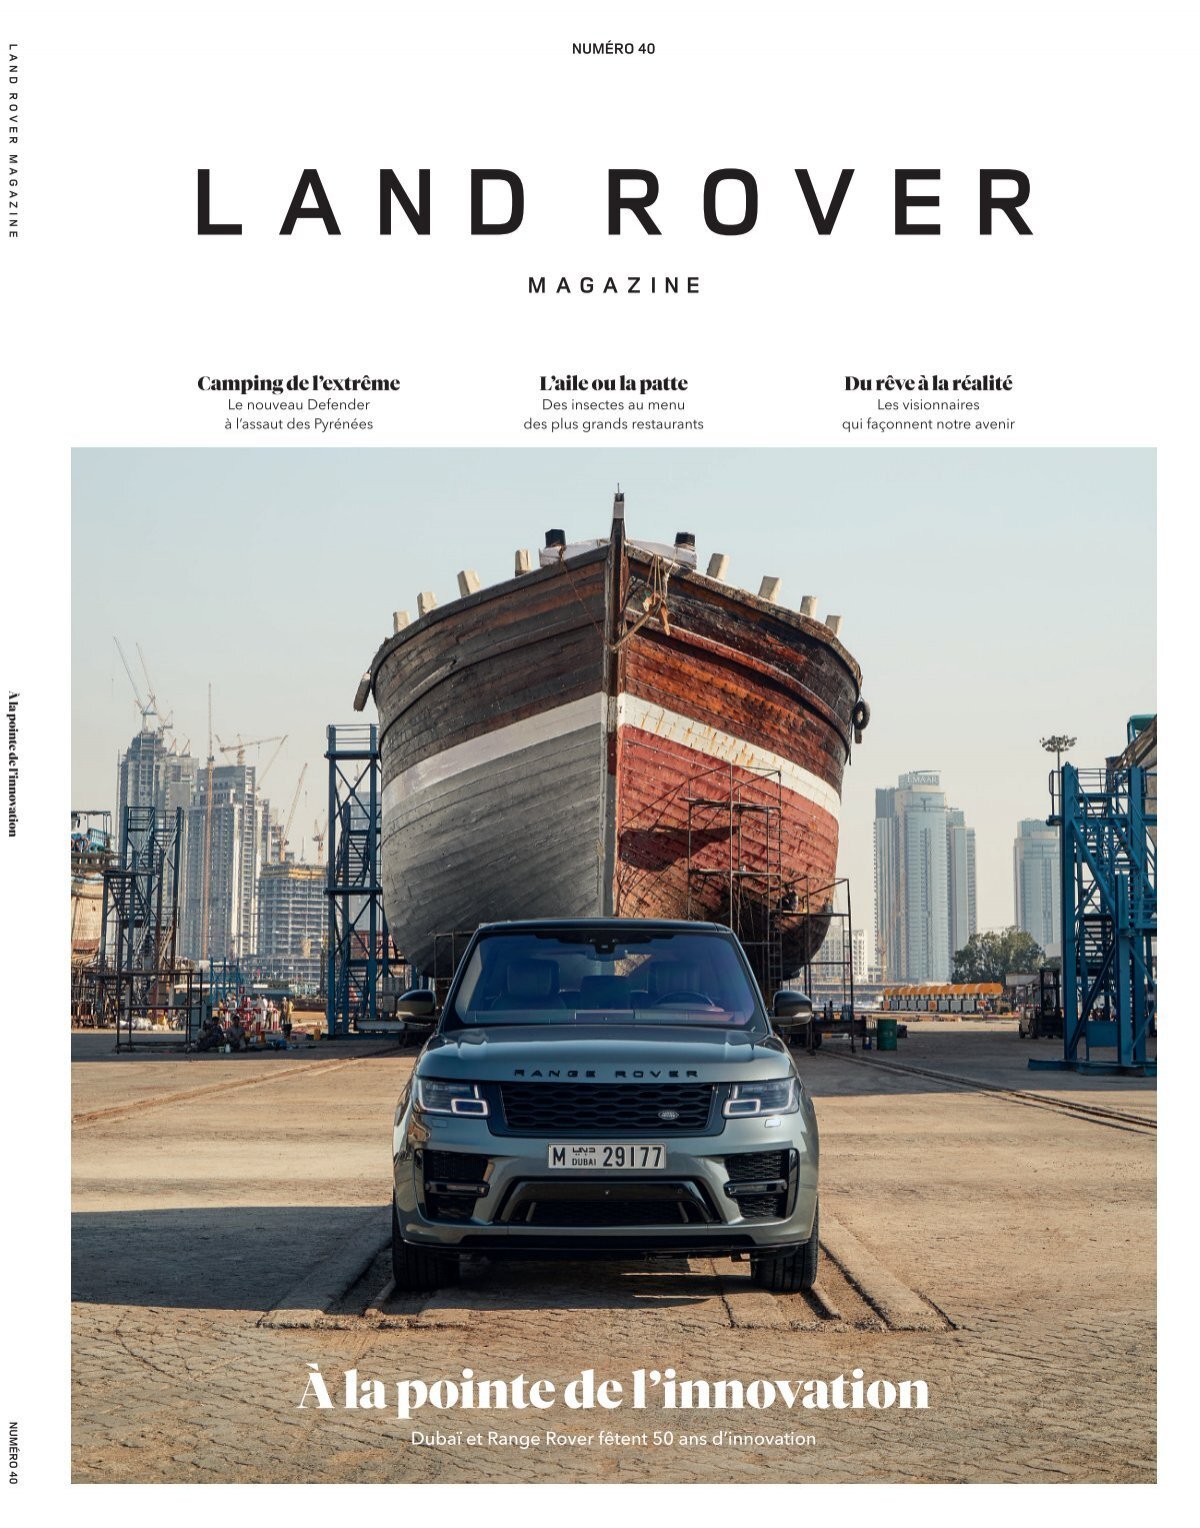 Accessoires pour animaux Land Rover : découvrez la gamme